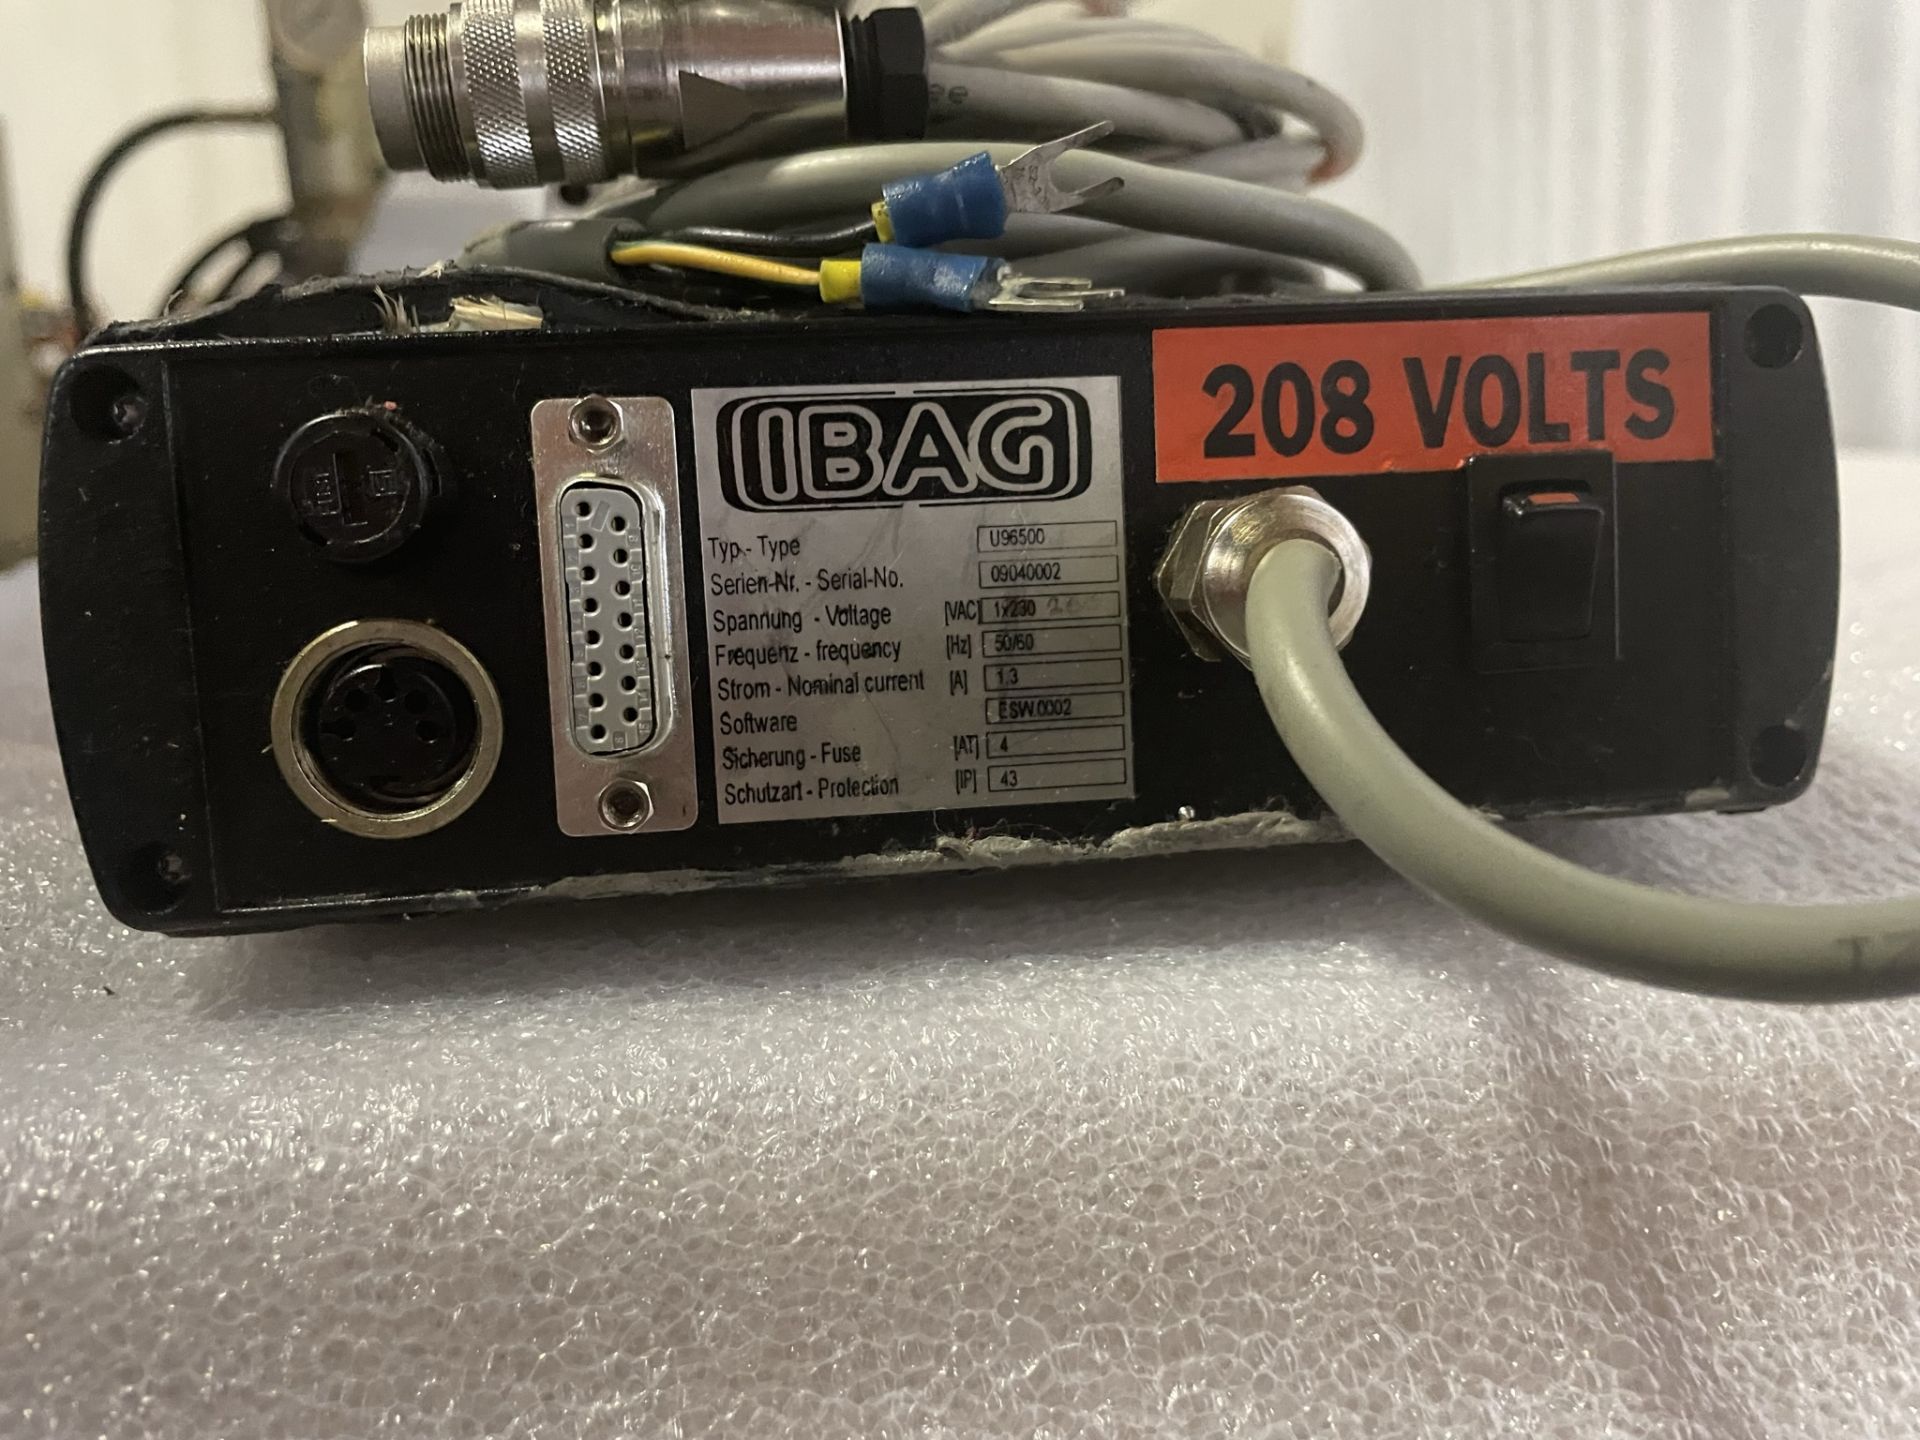 Ibag U96500 Spindle Controller, S/N 09040002208 Volt. - Image 3 of 4